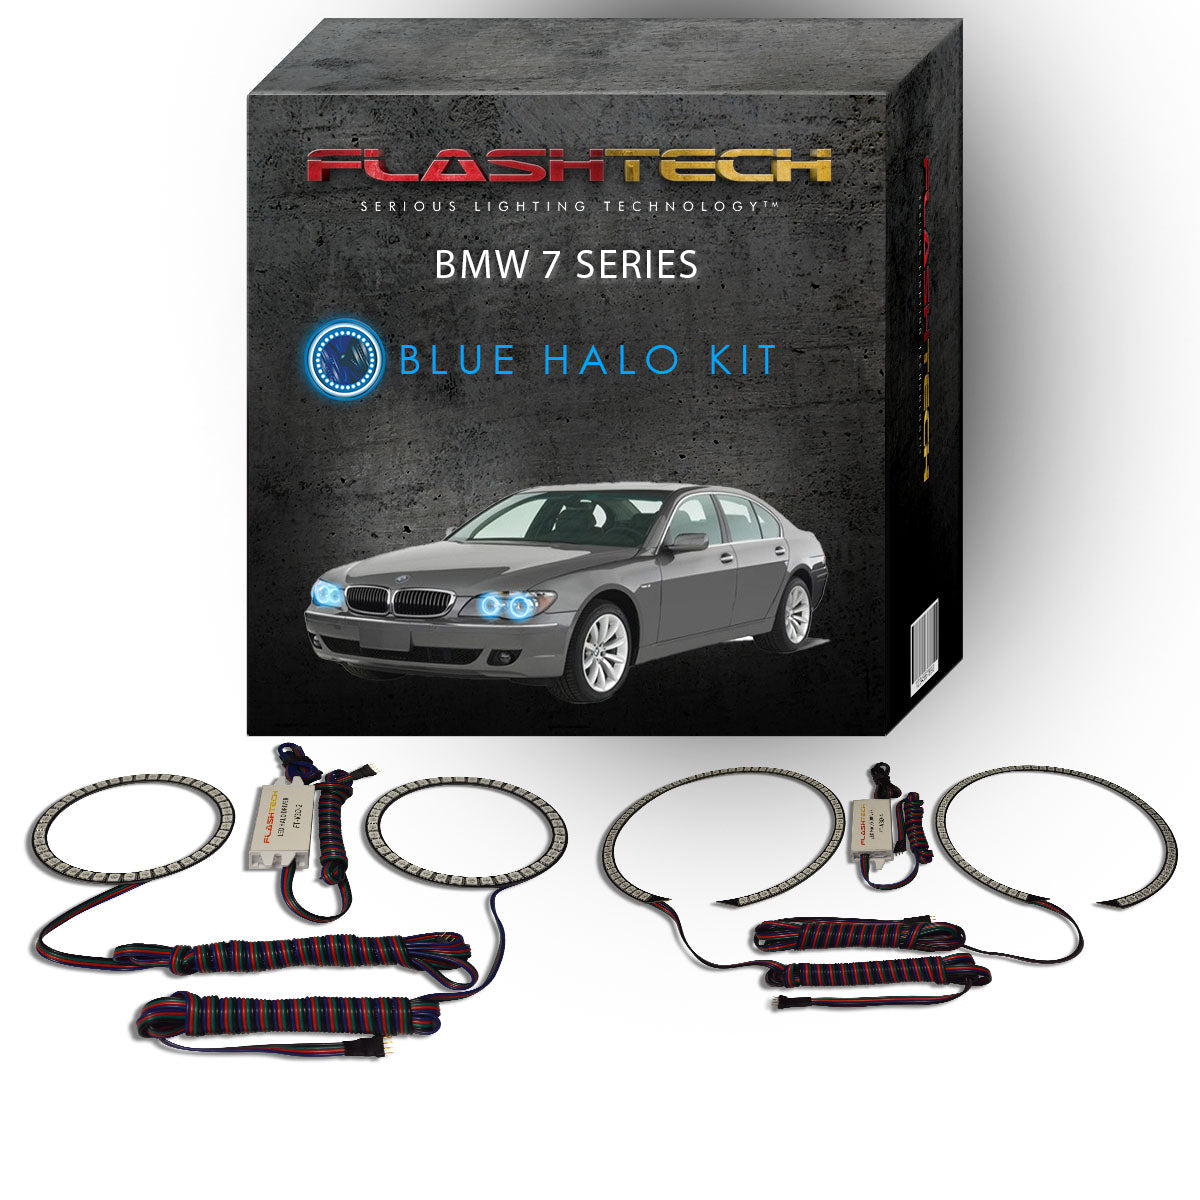 BMW-7 series-2006, 2007, 2008-LED-Halo-Headlights-RGB-No Remote-BM-7S07-V3H